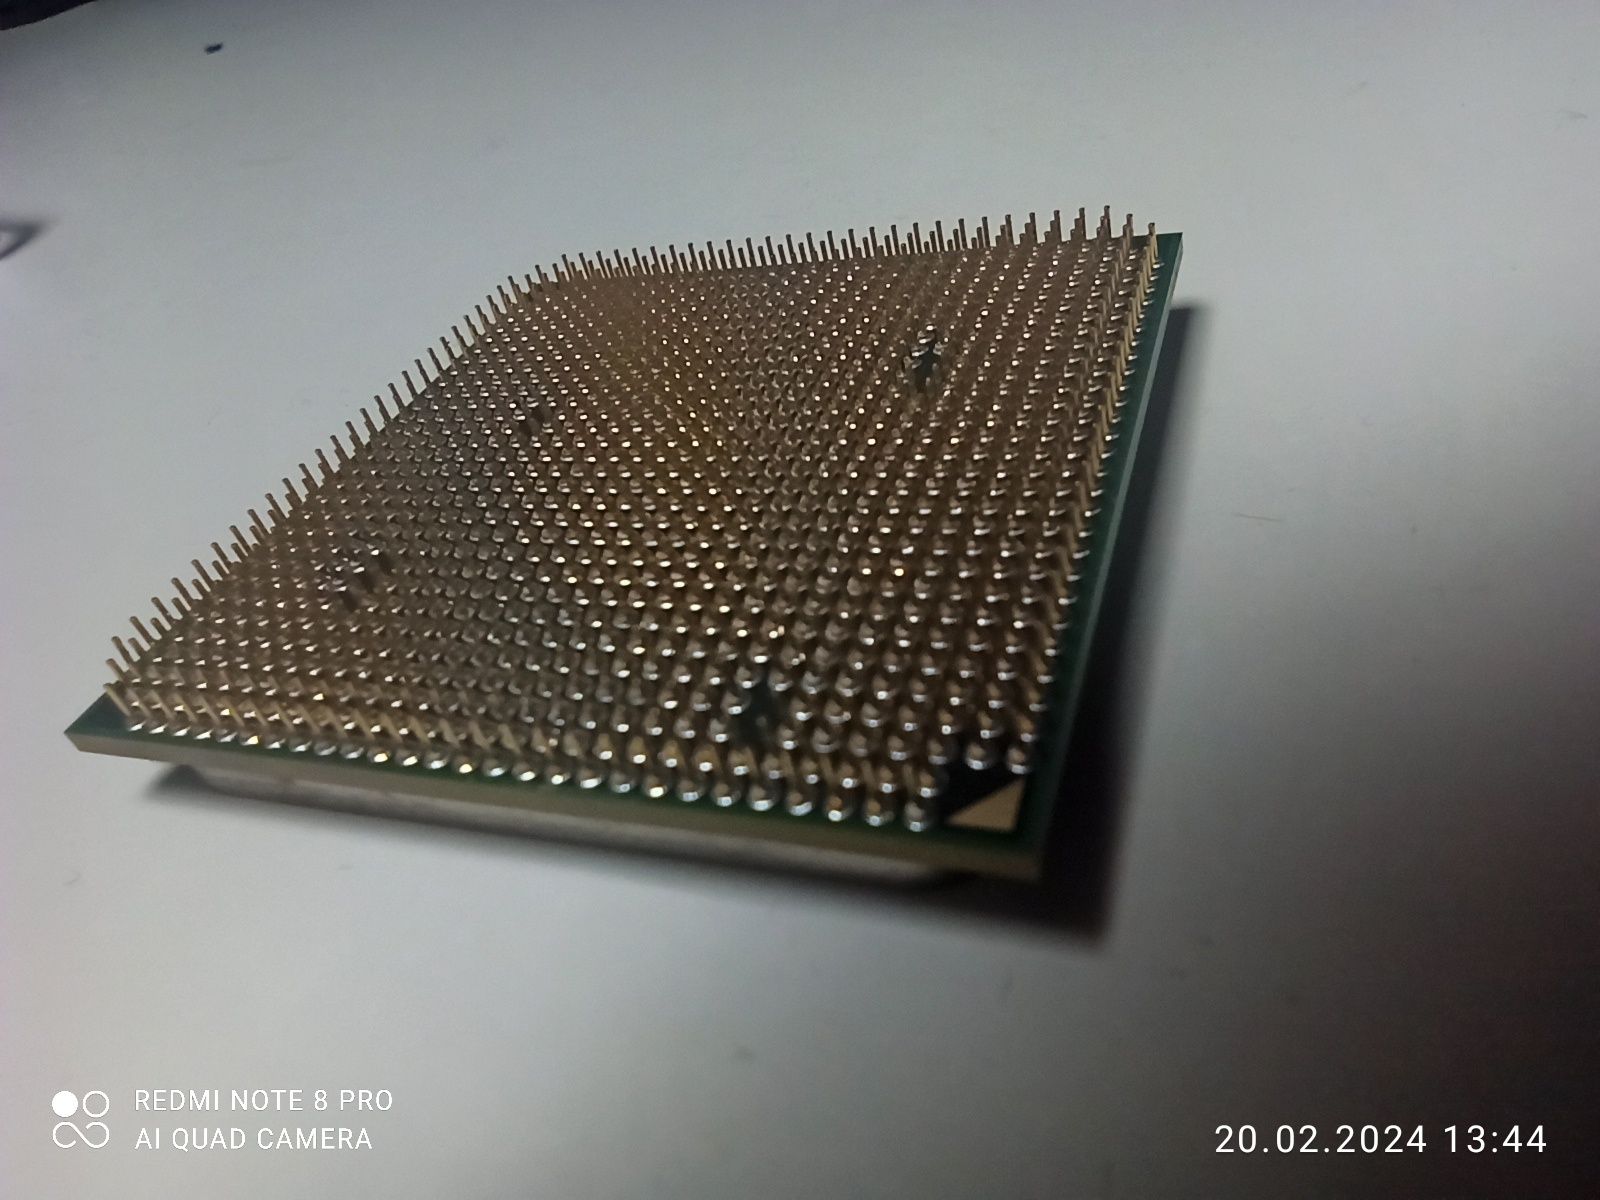 Procesor amd athlon 2 x3 460 + chłodzenie